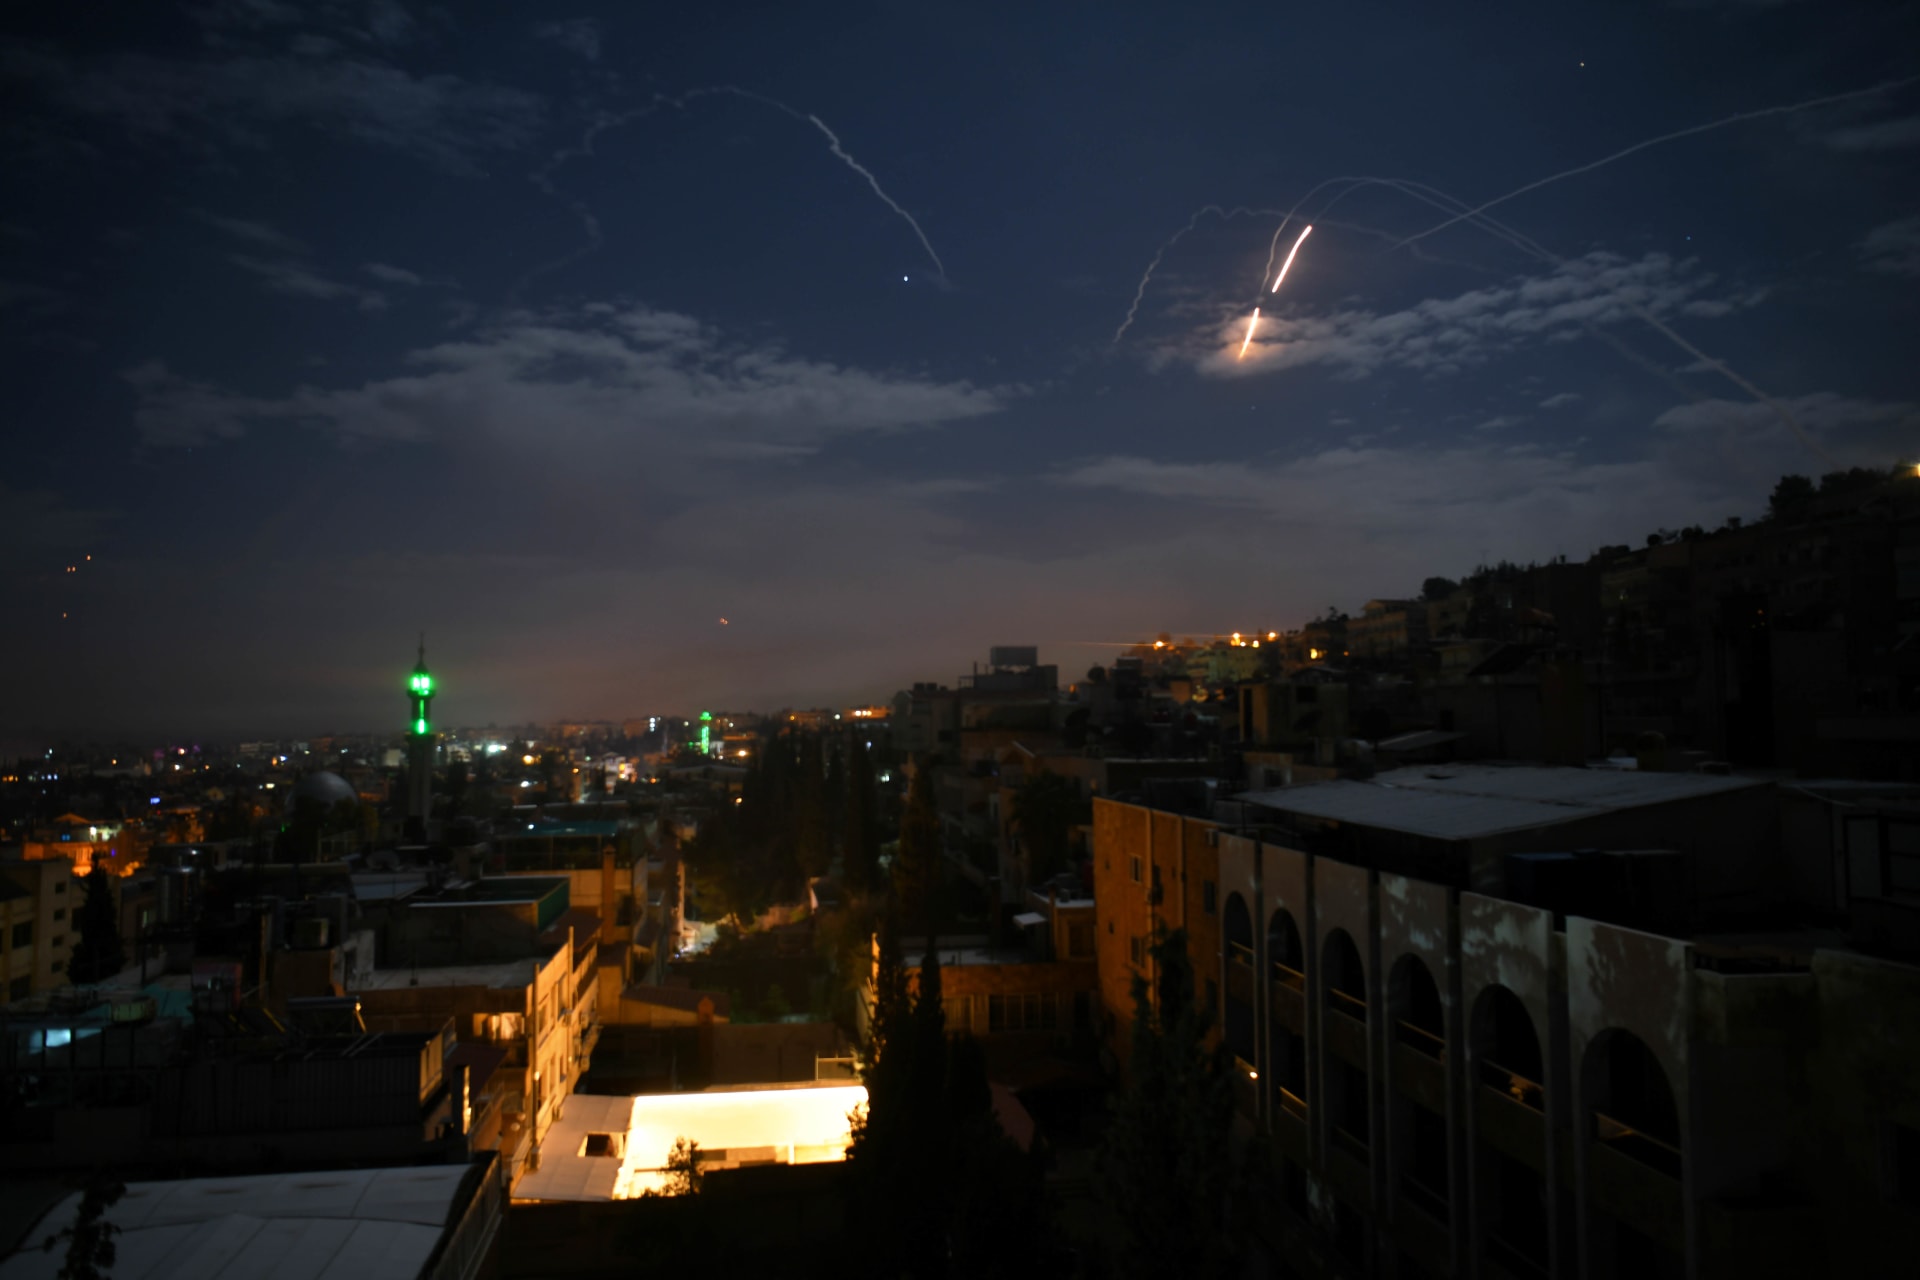 سوريا: هجوم جوي إسرائيلي يُسفر عن مقتل 4 عسكريين وإصابة آخرين